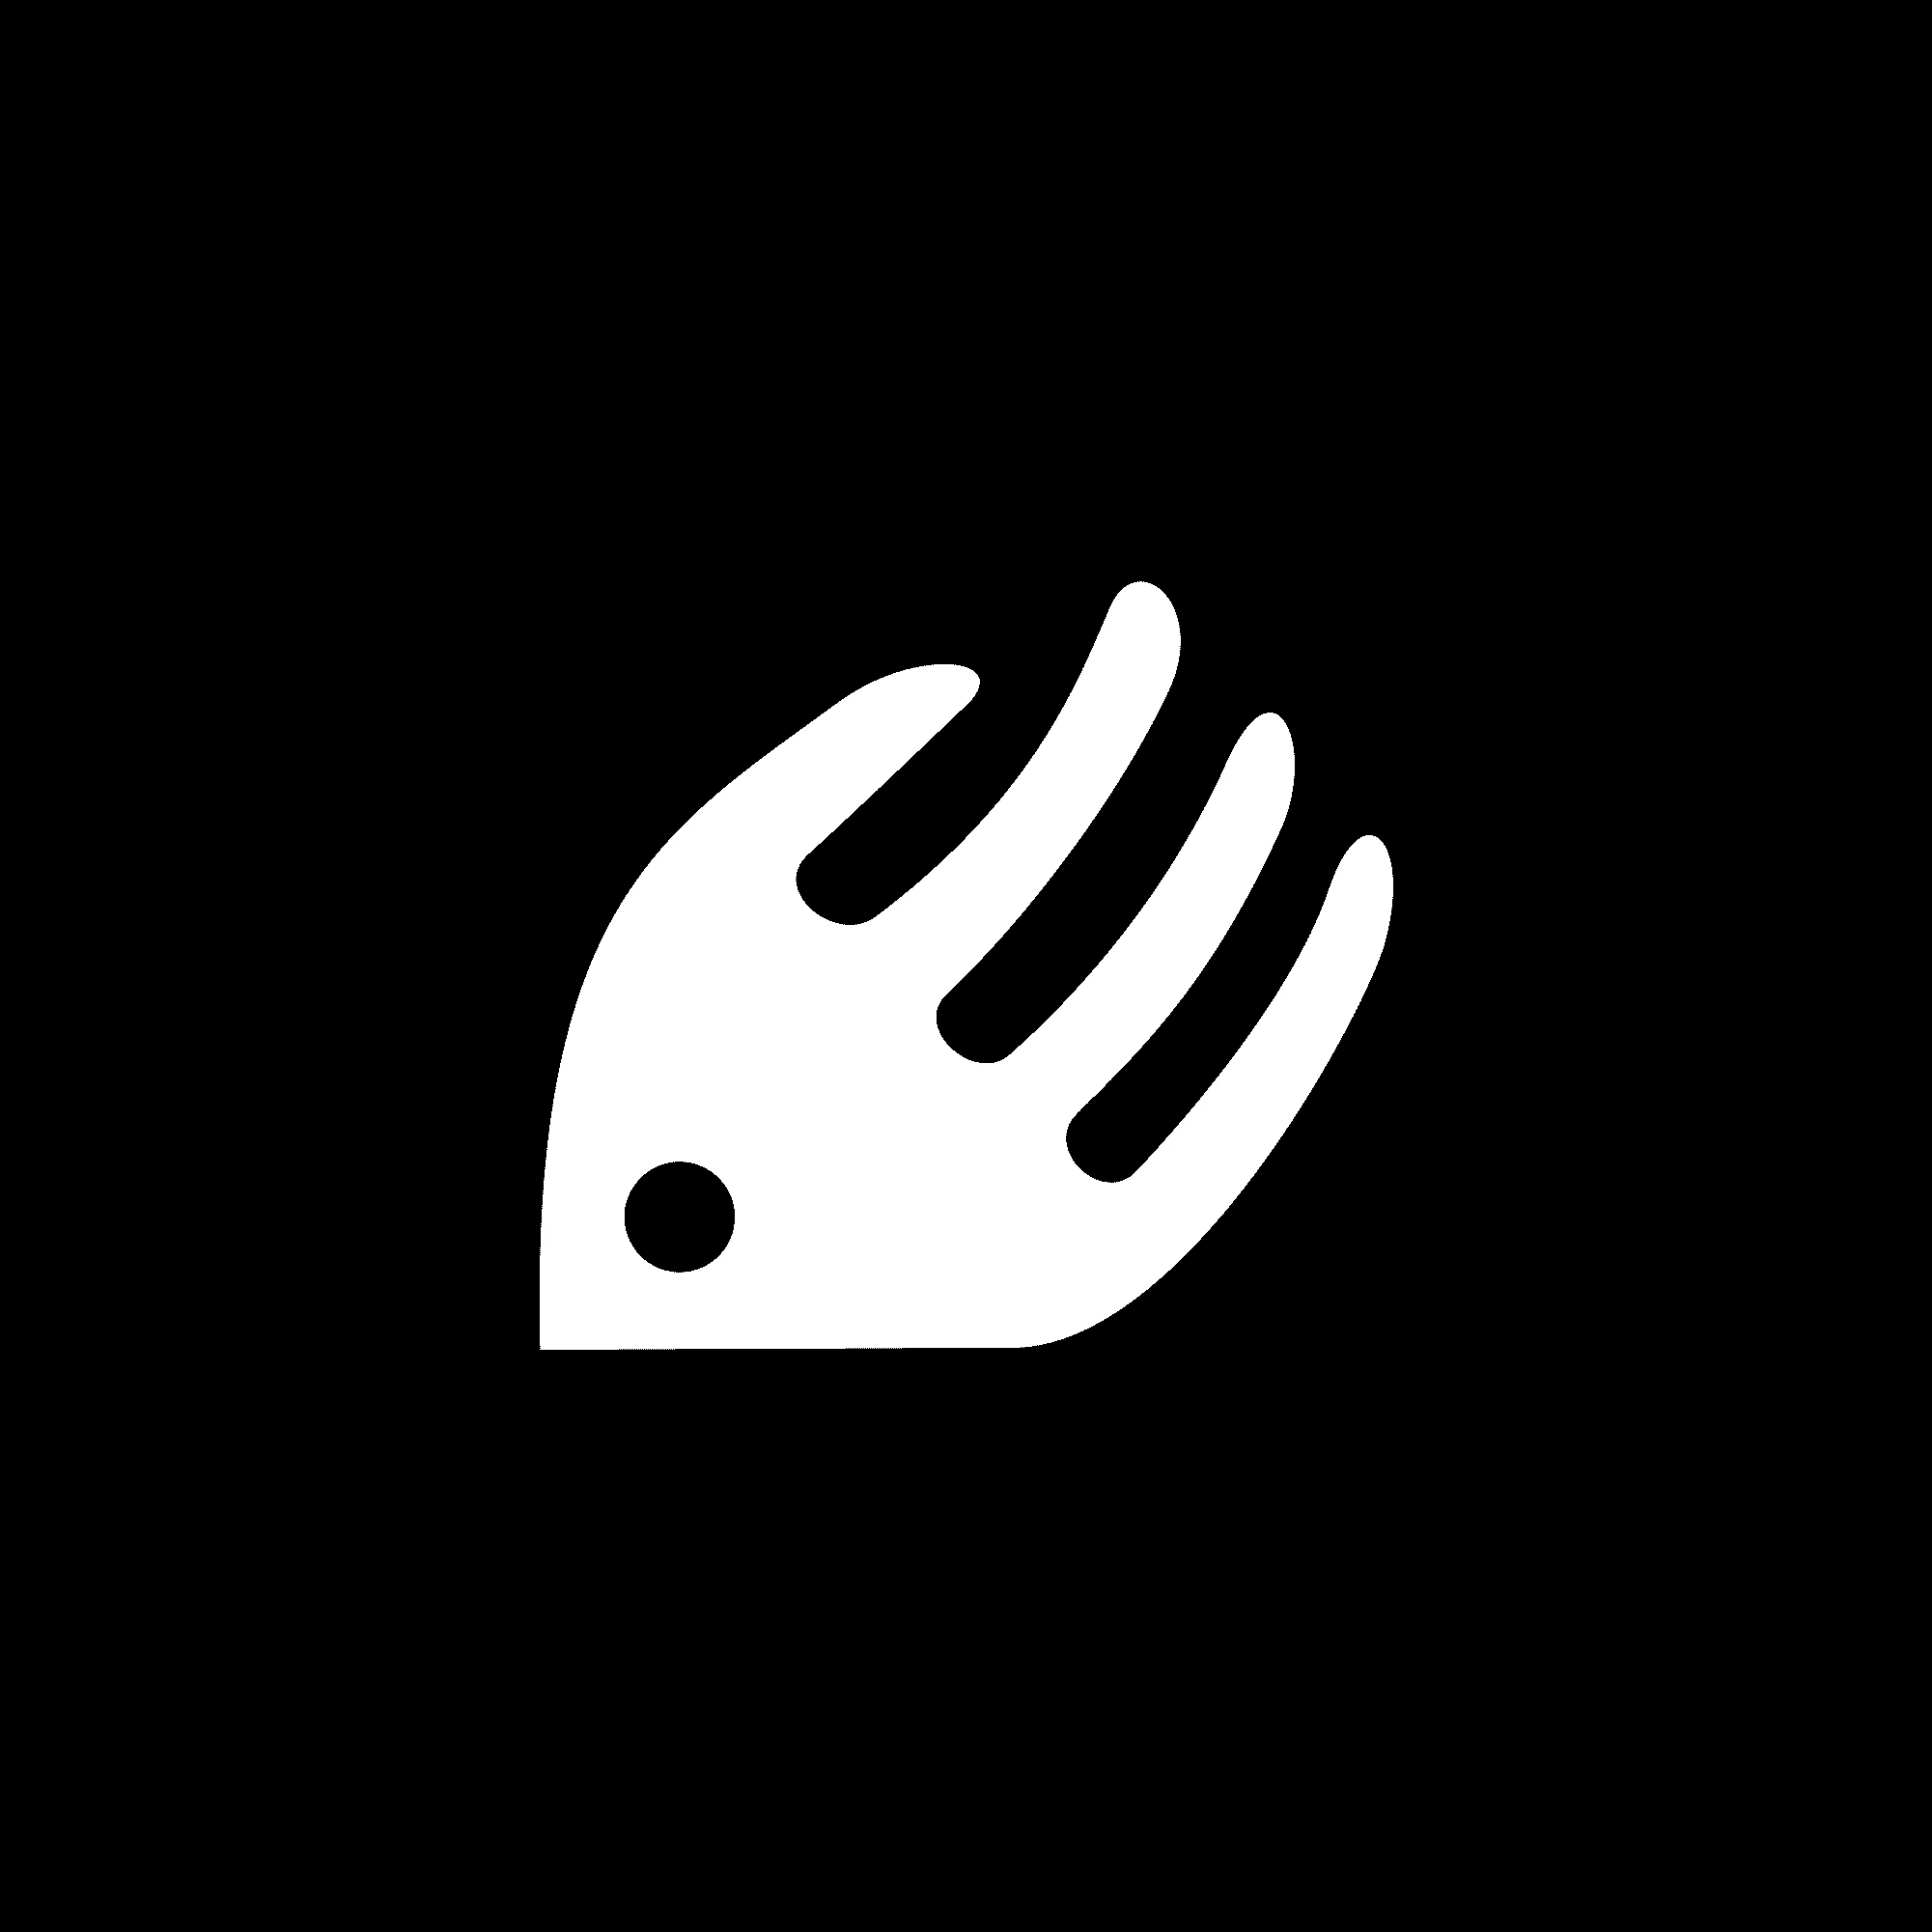 Branding Logo Design Fish fork shaped, black and white